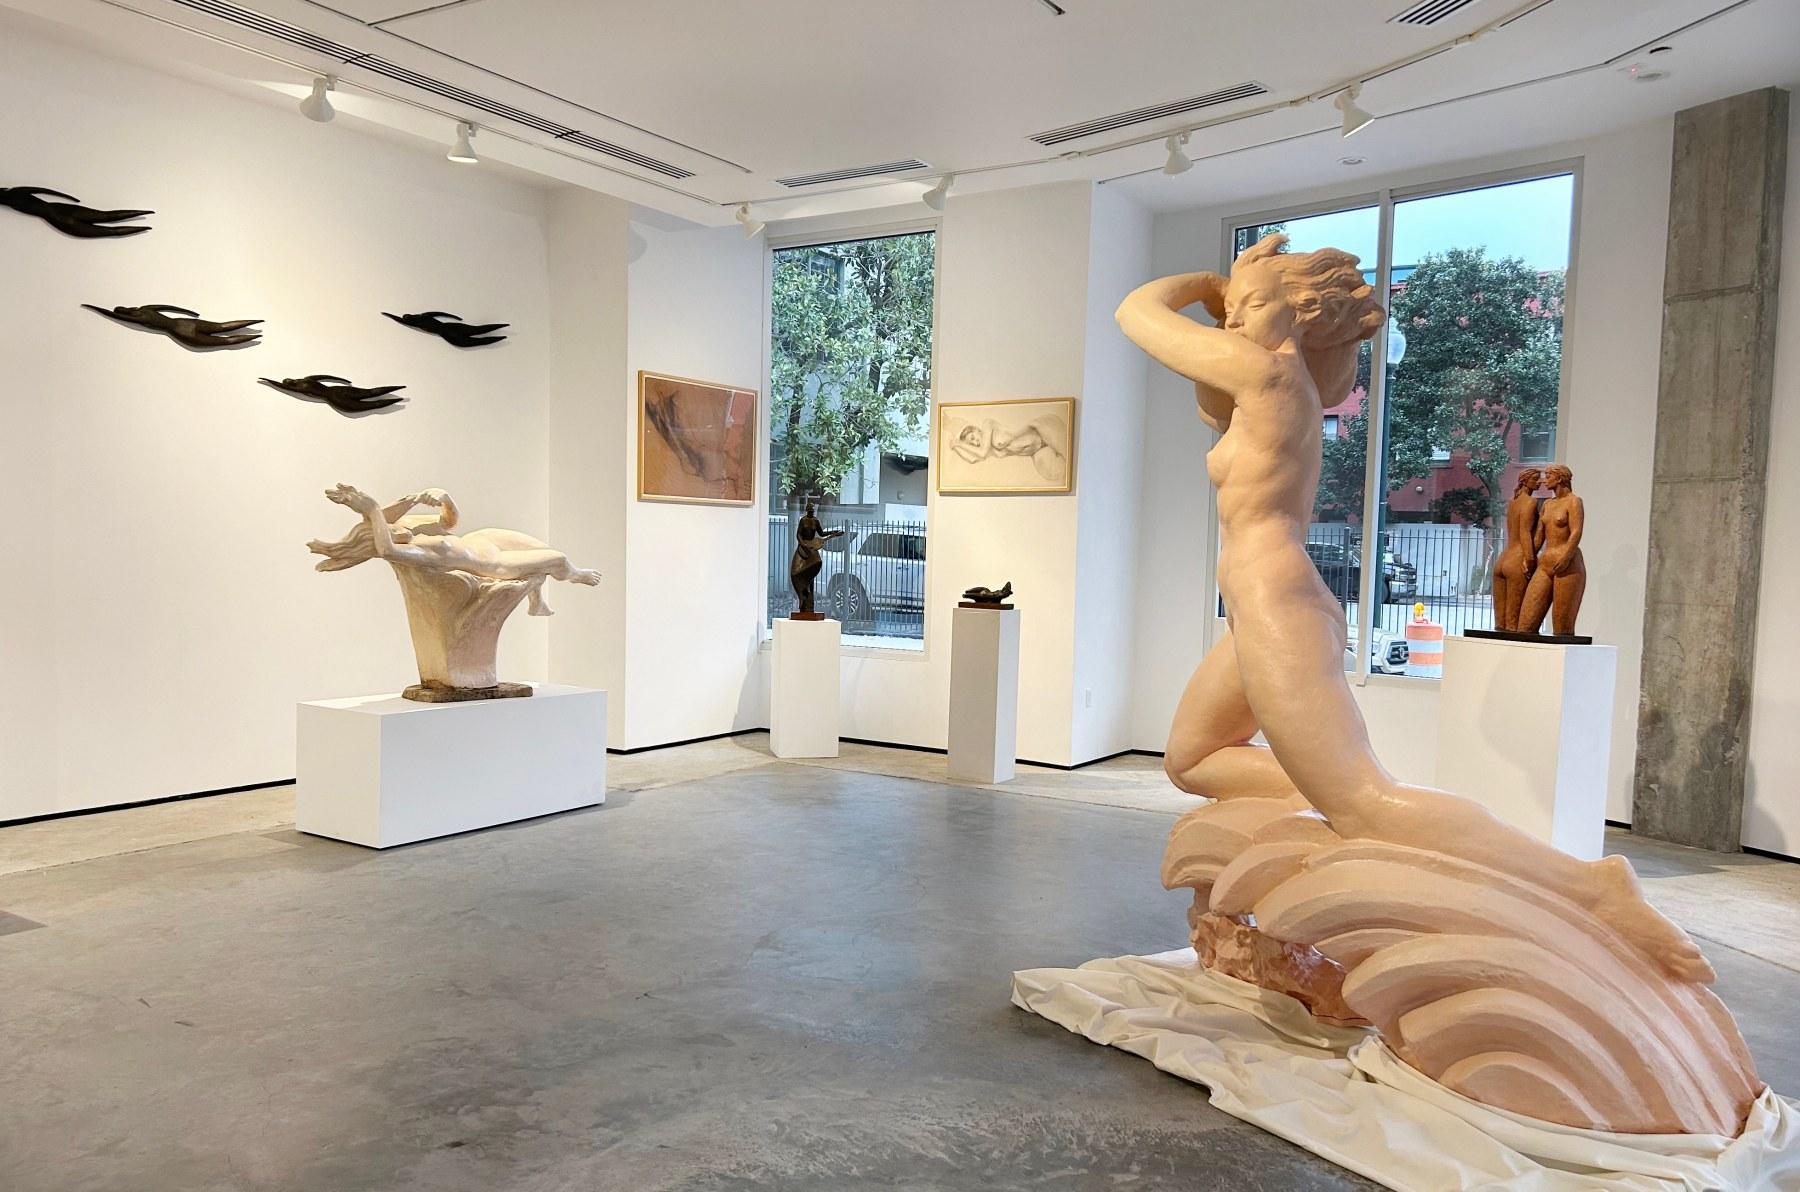 Reclining Nude - Sculpture by Enrique Alférez